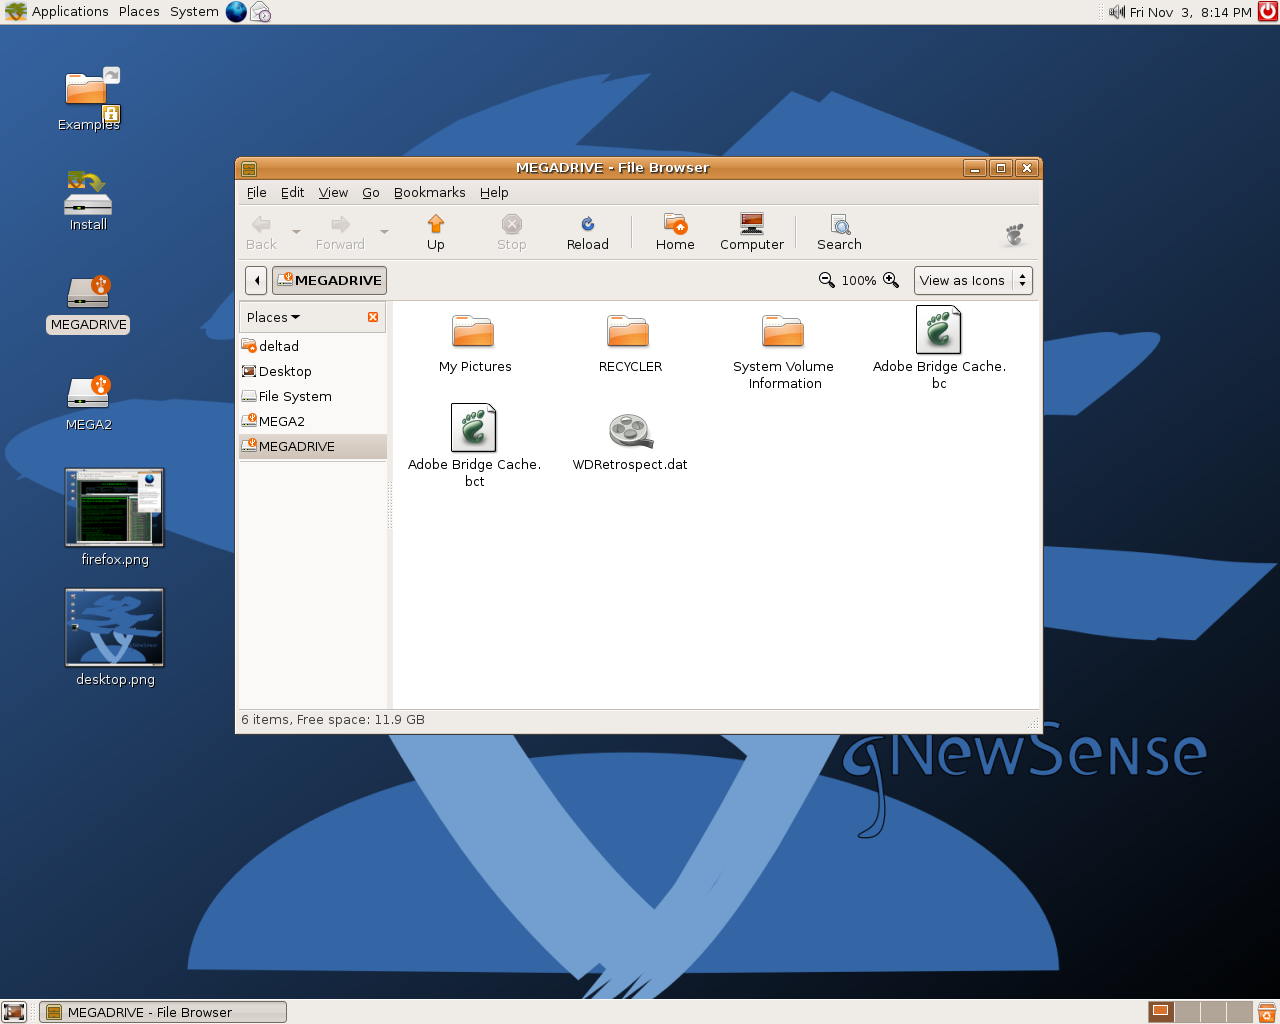 gNewSense - NTFS hard drive mounted